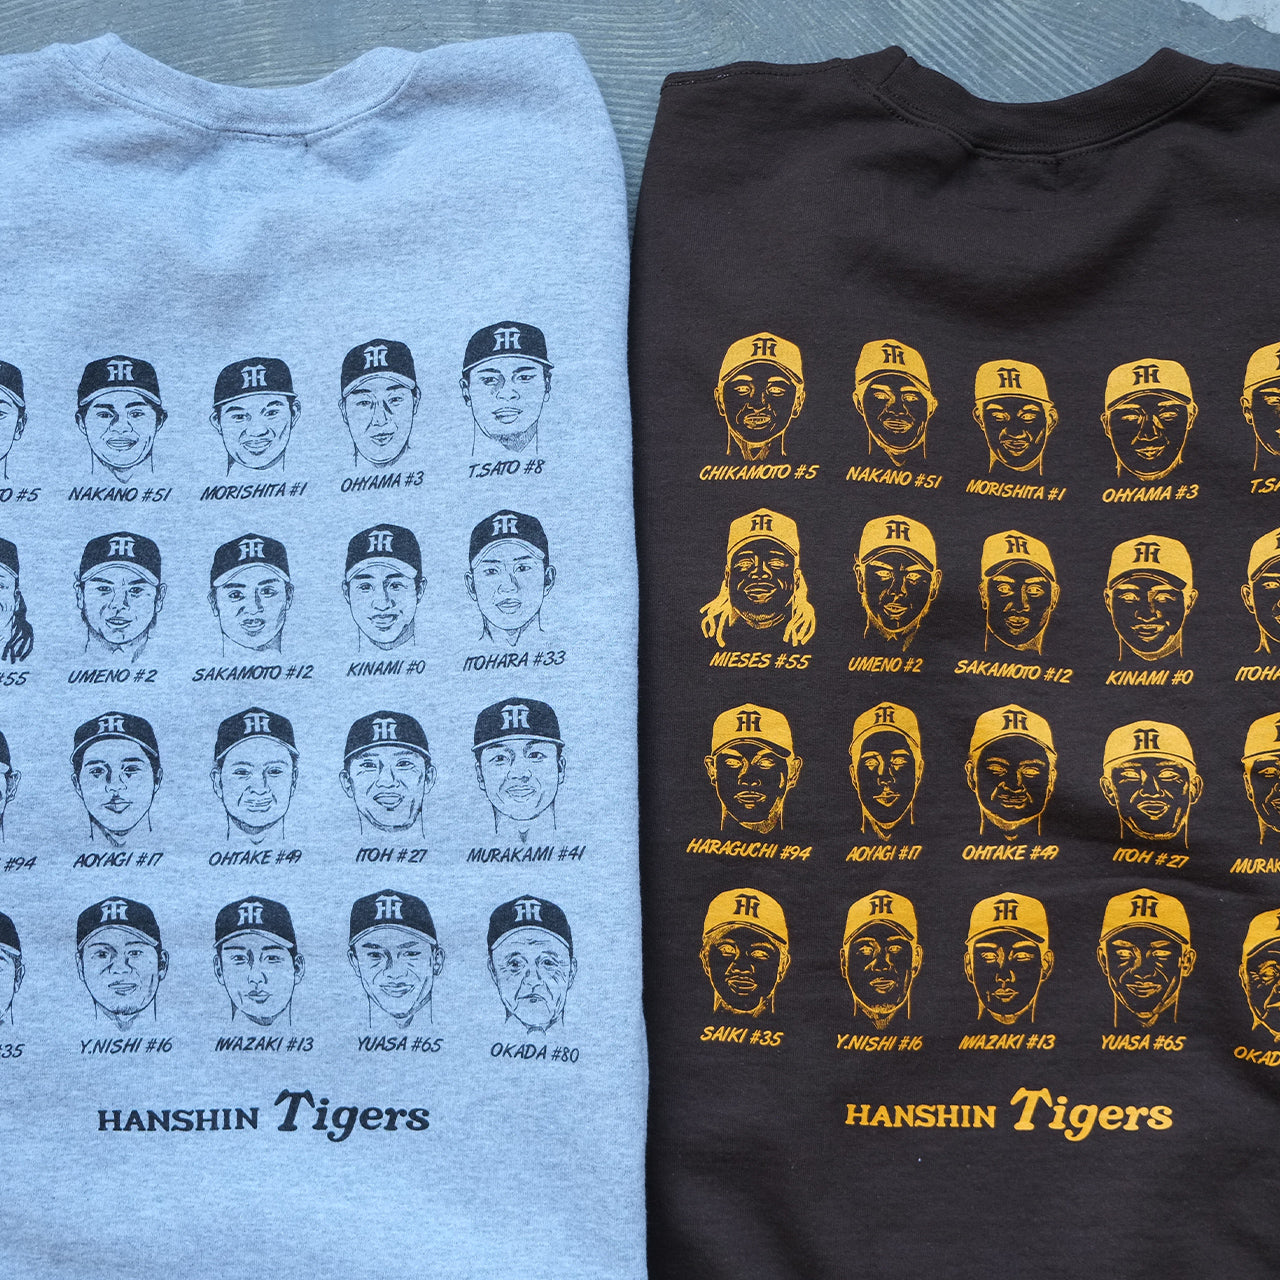 阪神タイガース × ジャンクソン HANSHIN TIGERS × JHANKSON スウェット SWEAT オフィシャルコラボレーション 18001